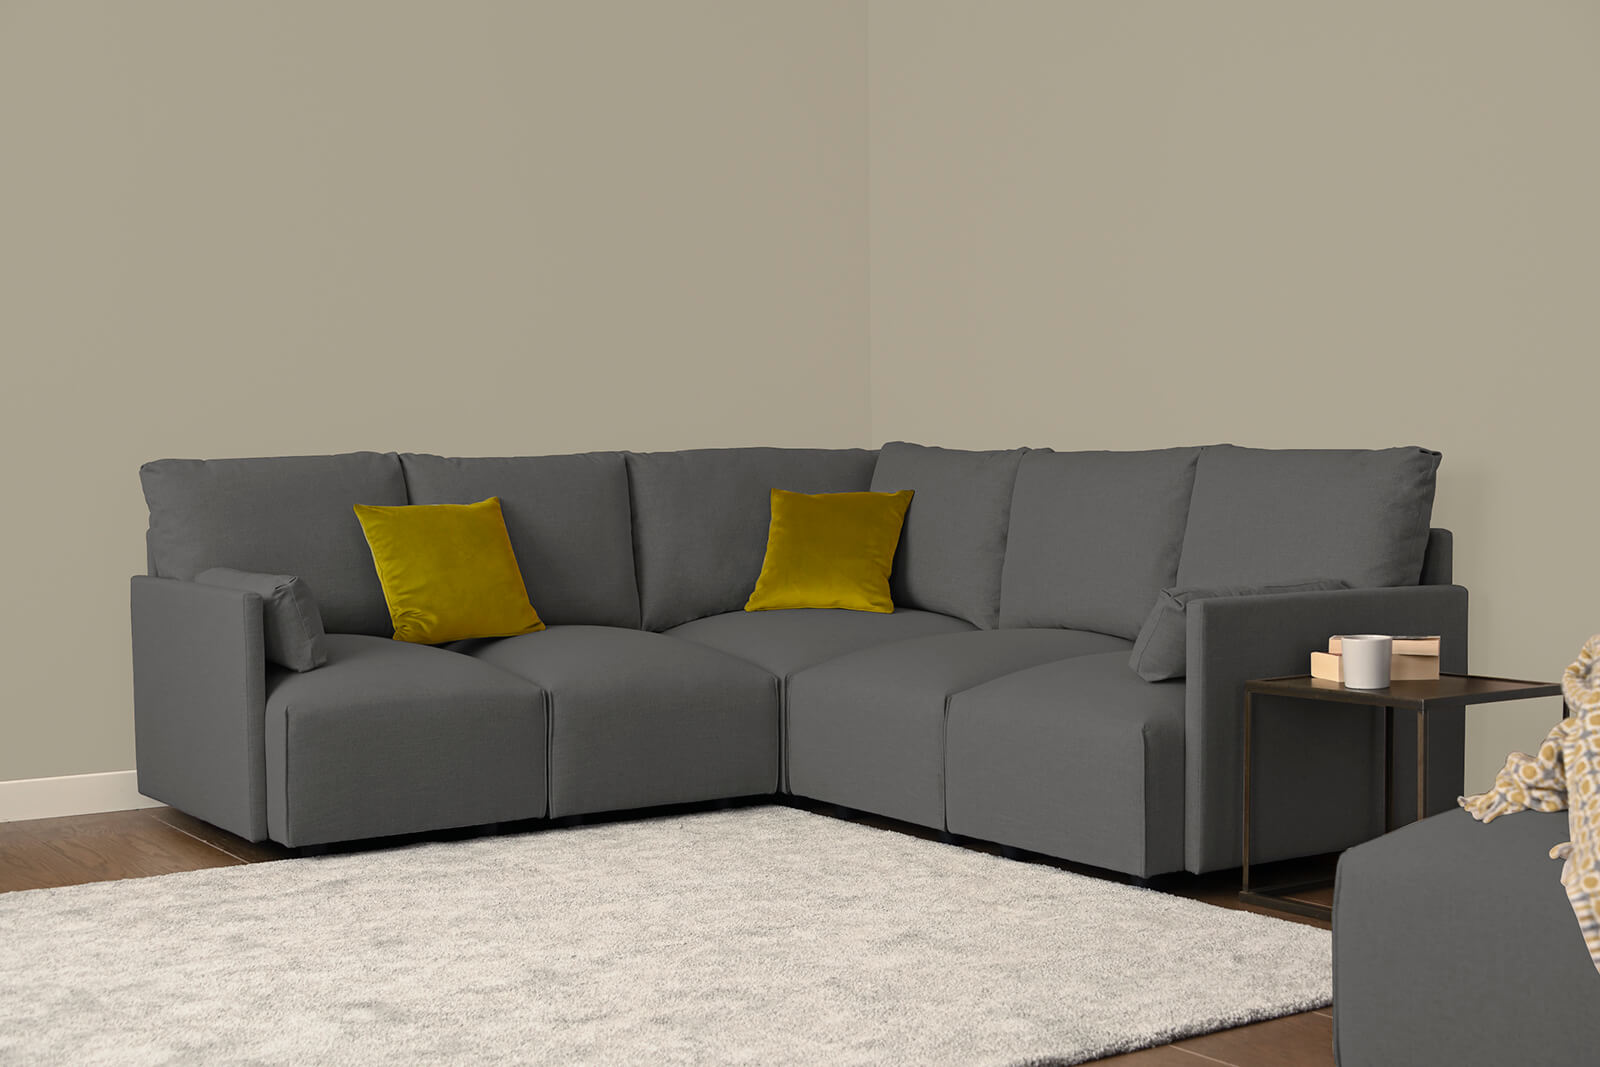 HB04-medium-corner-sofa-3q-seal-3x3-lifestyle